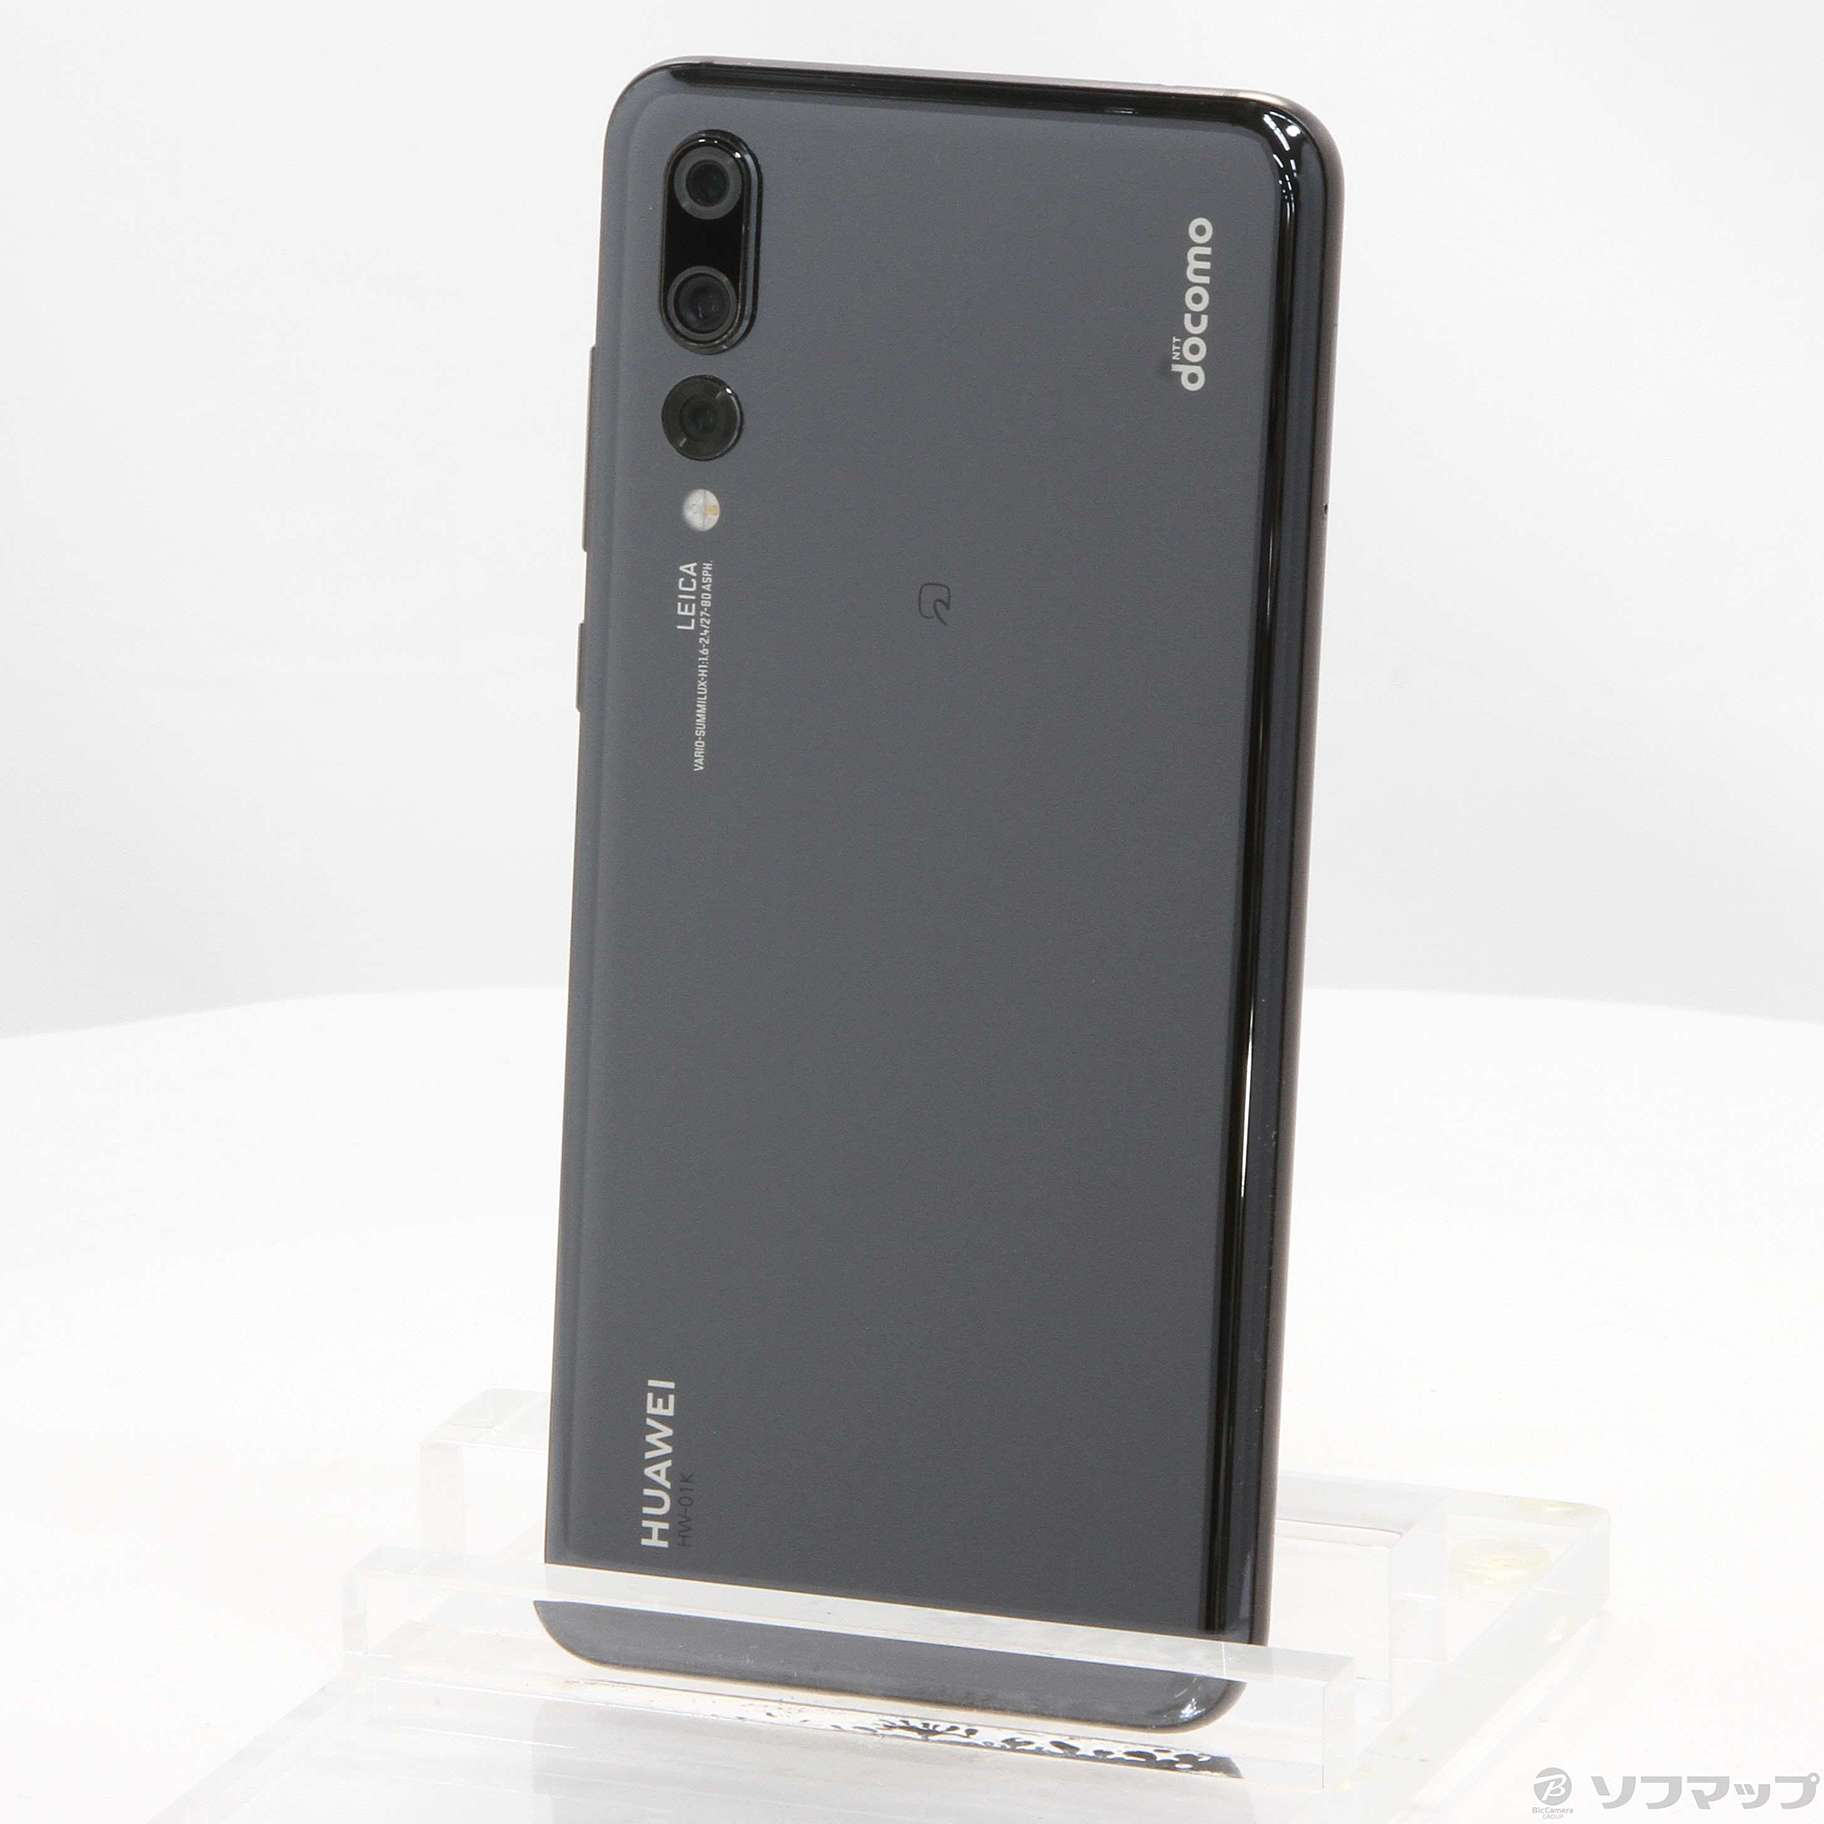 Huawei P20 Pro Black 128GB